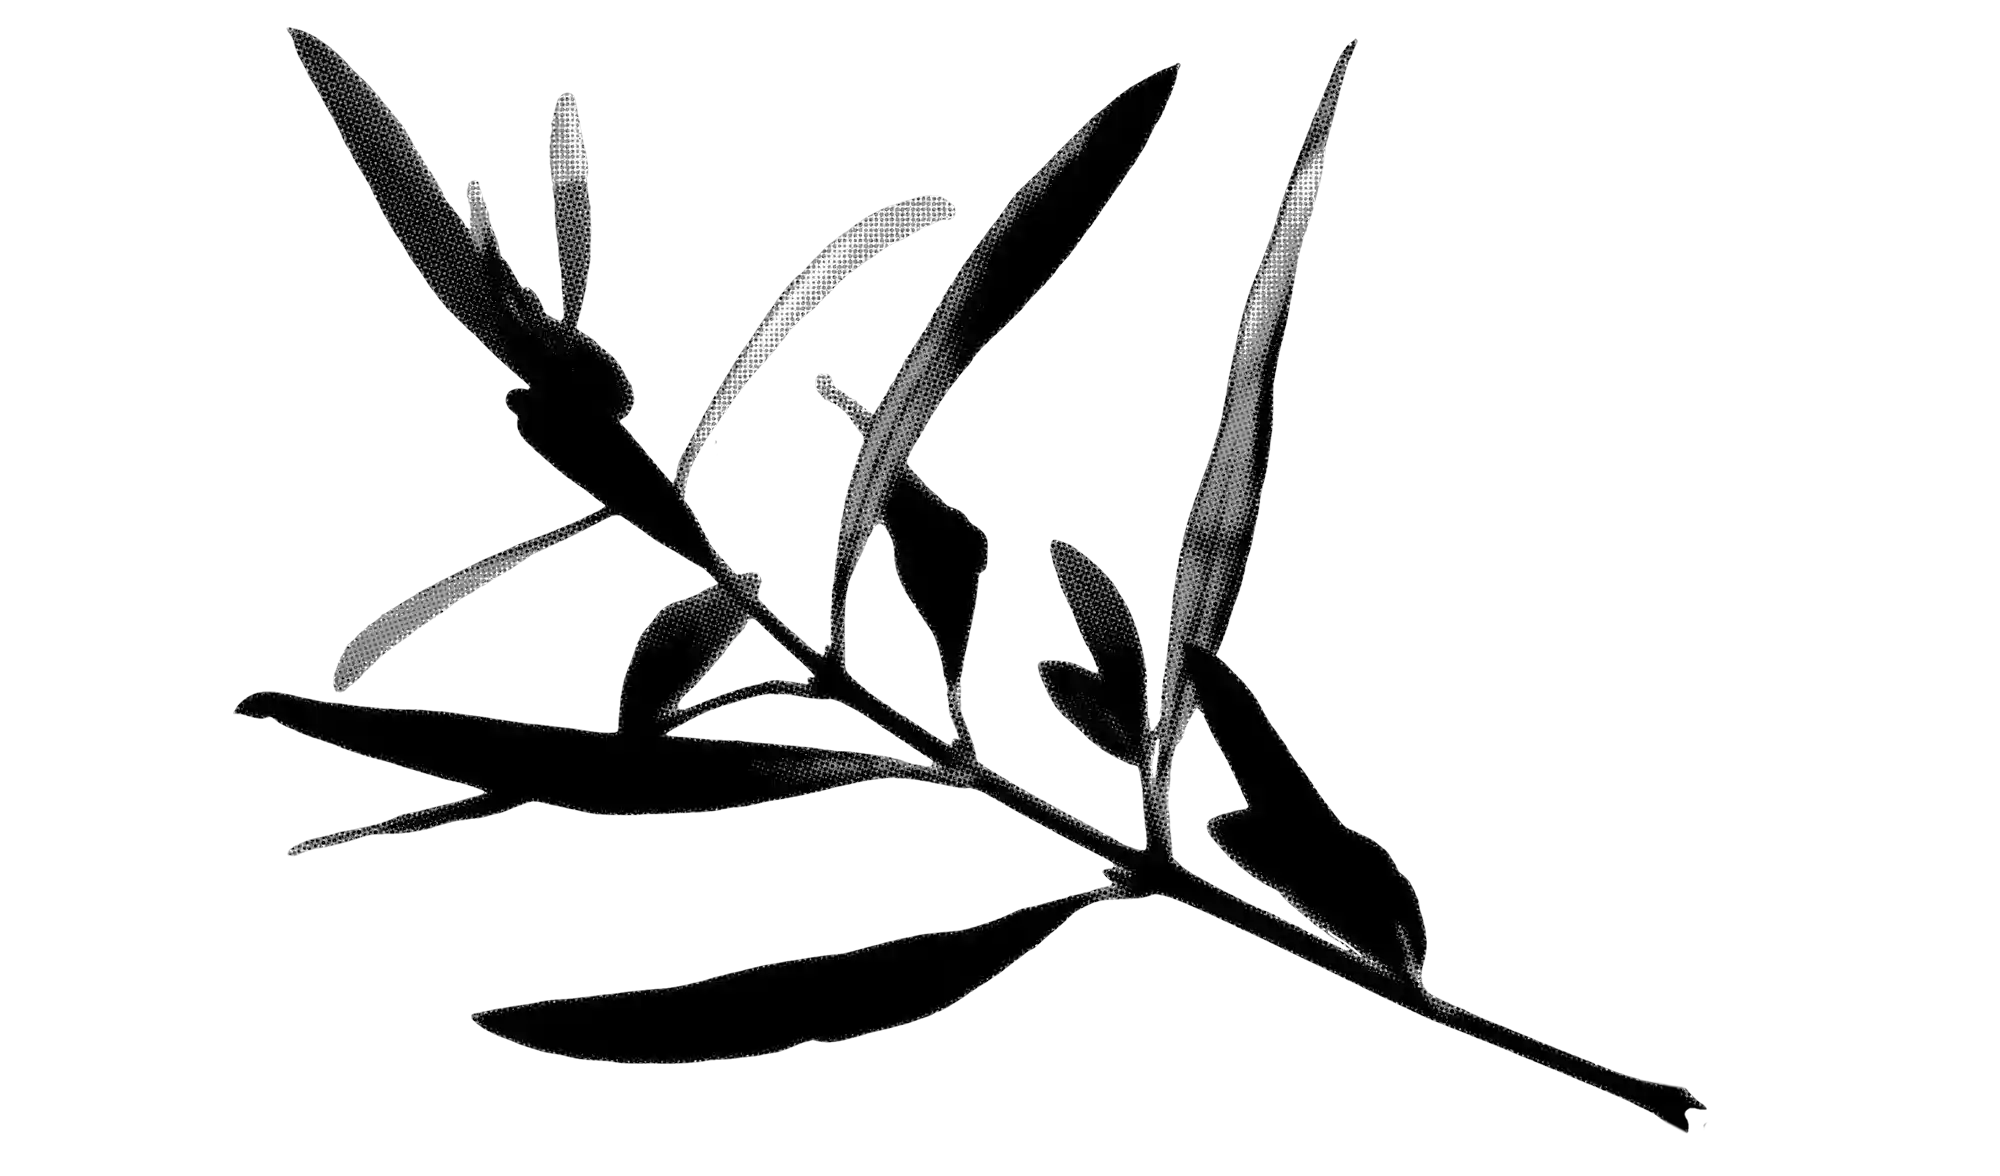 Freigestellter Zweig mit länglichen Blättern in schwarz-weisser Druckraster-Optik